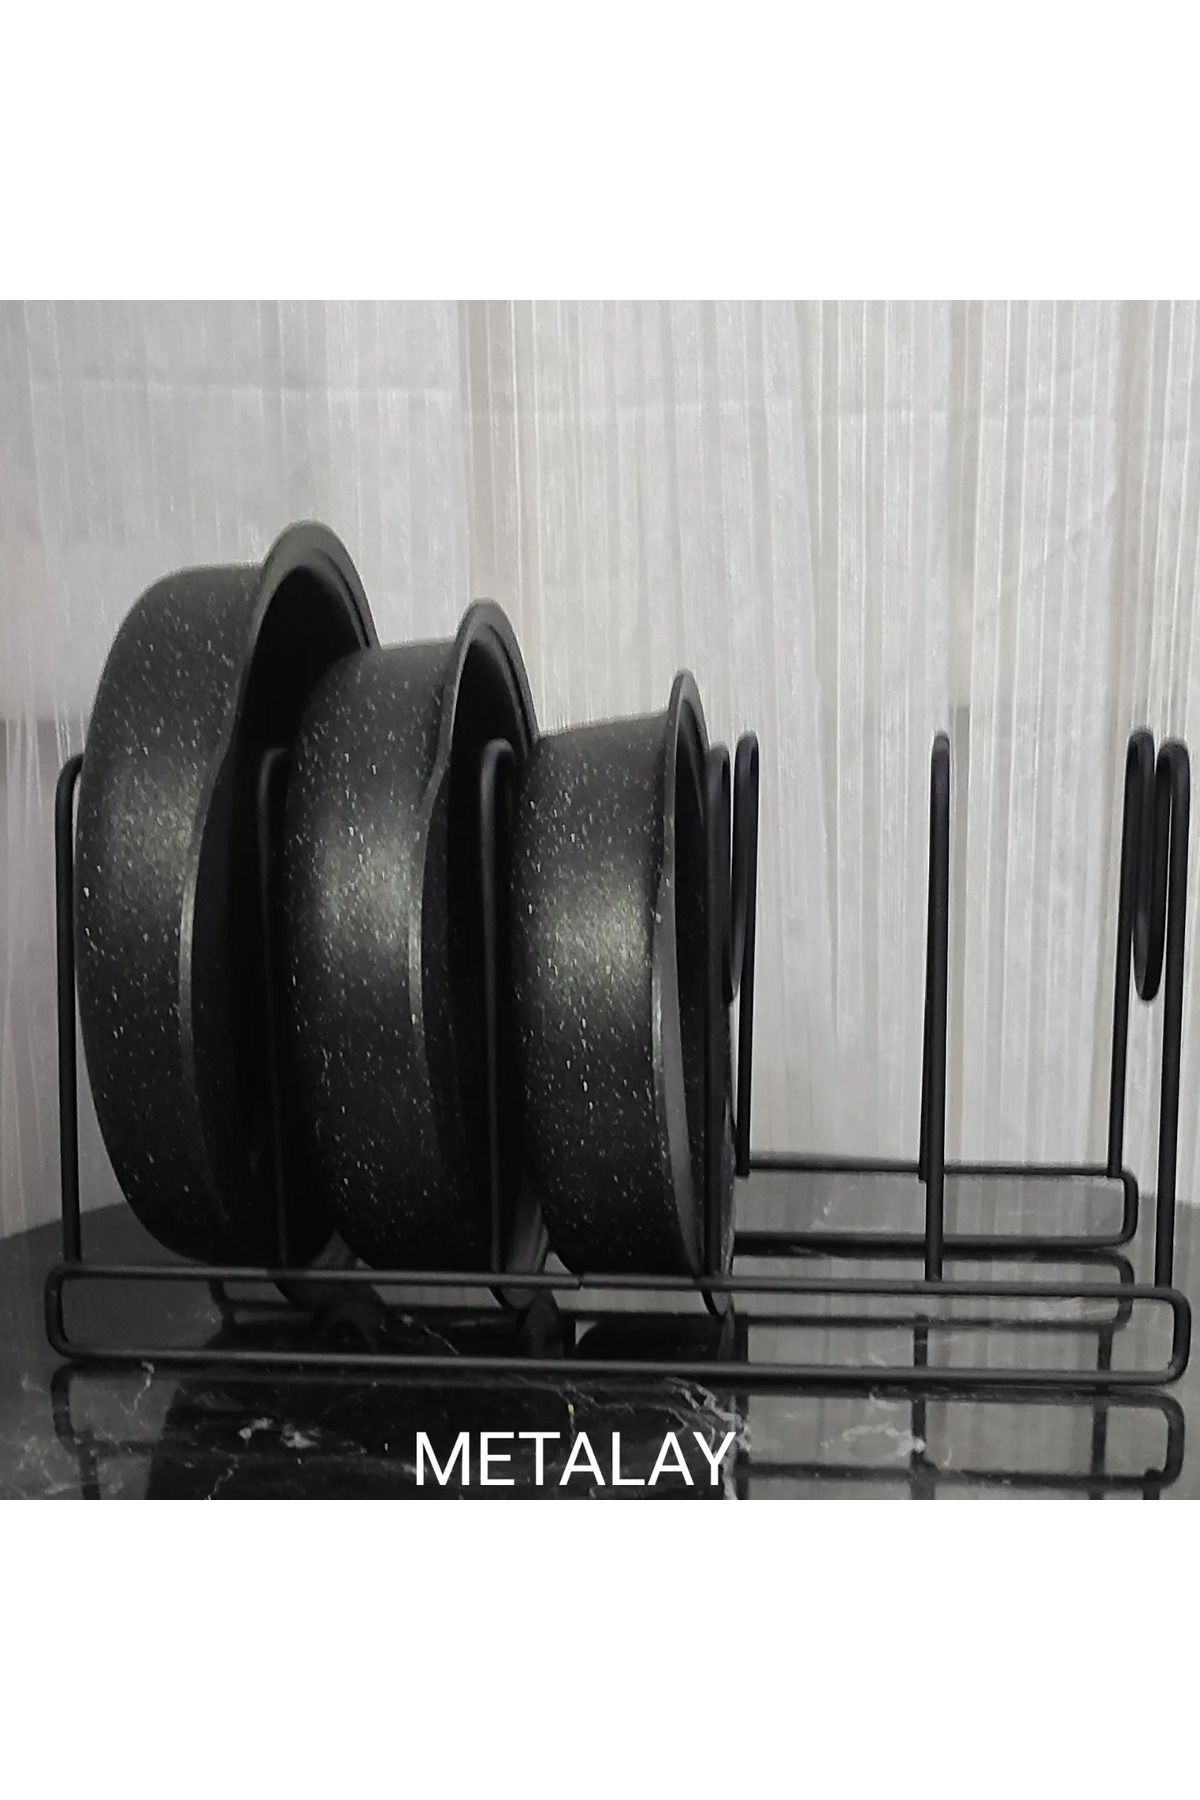 METALAY Metal siyah Tava Ve Tencere Kapağı Düzenleyici Tava Organizeri